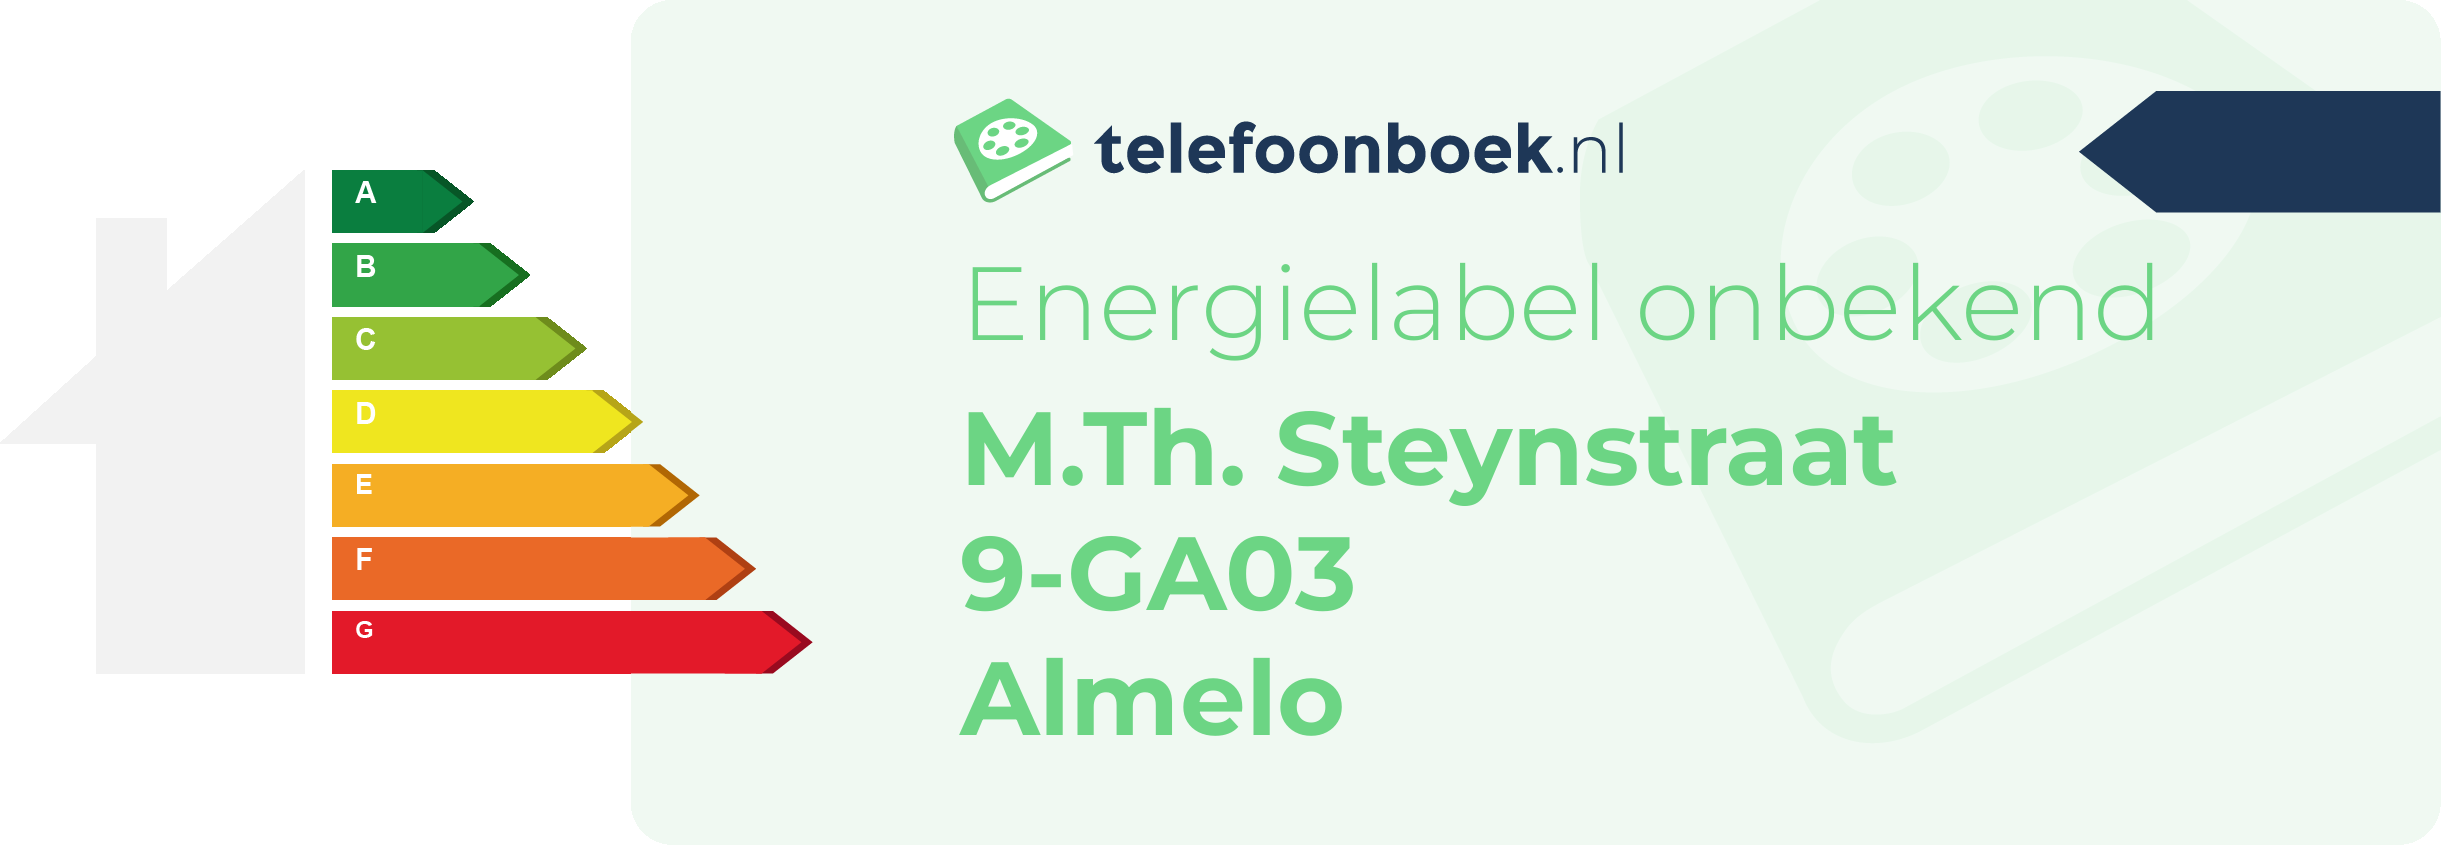 Energielabel M.Th. Steynstraat 9-GA03 Almelo